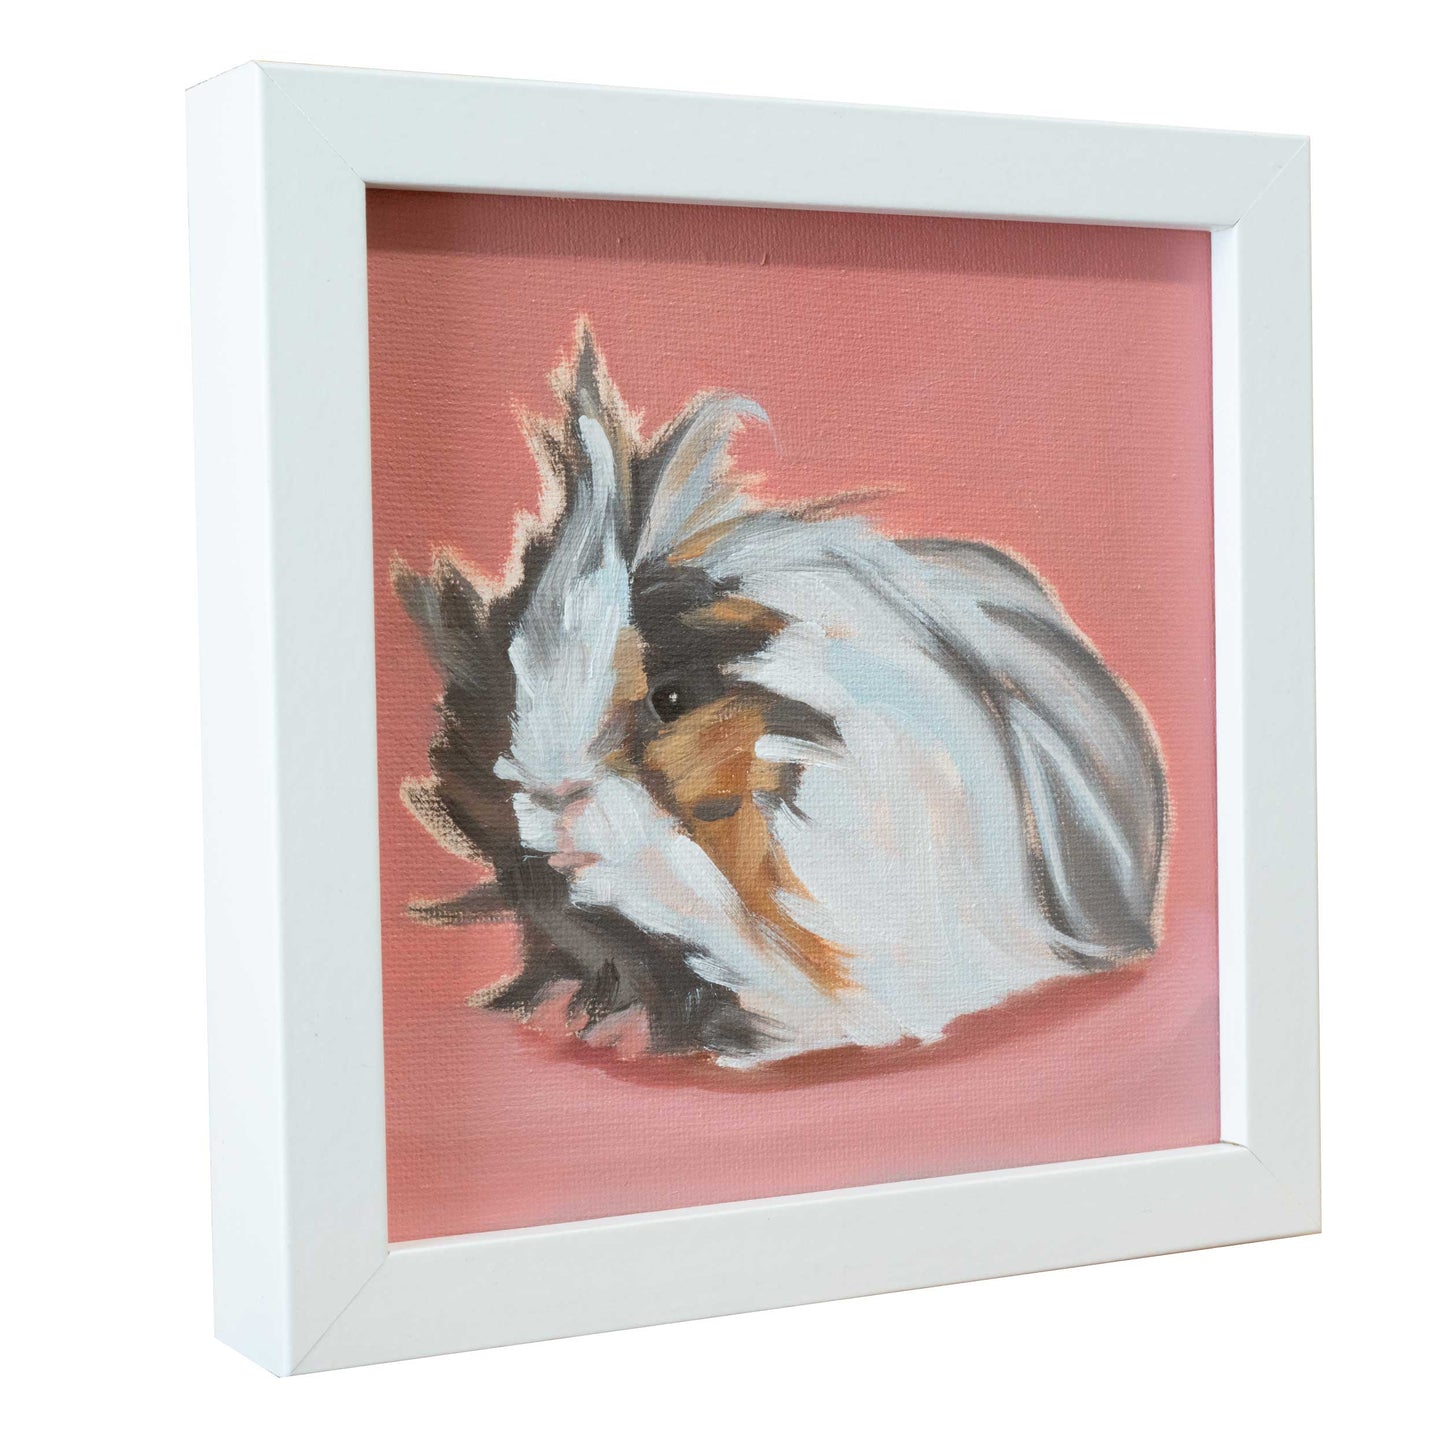 Guinea pig, unique, oil painting, single piece, 15 x 15 cm